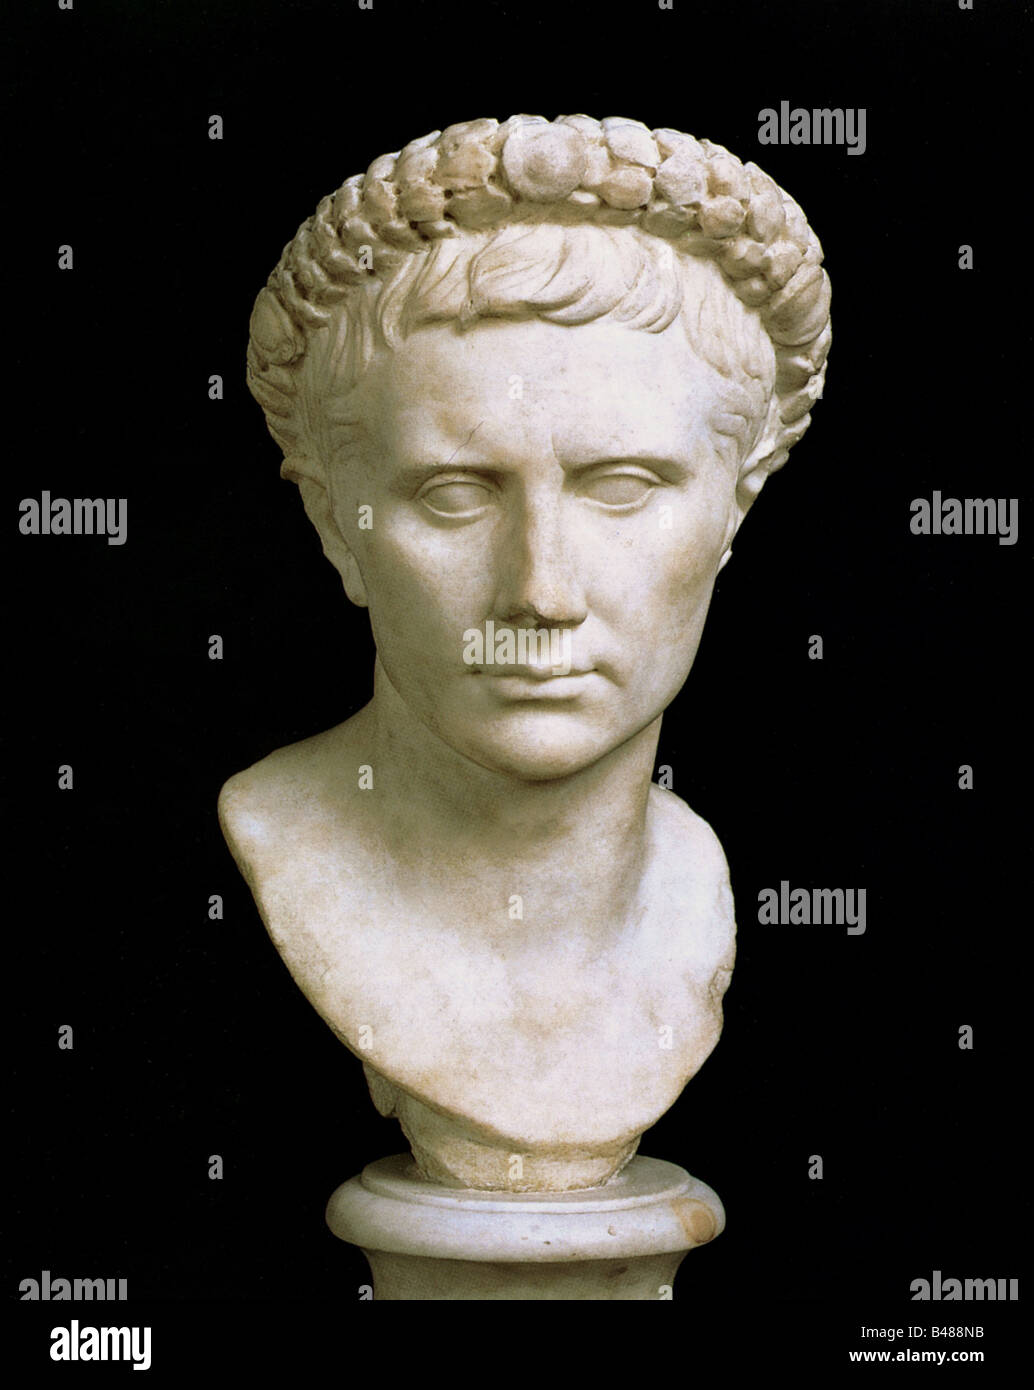 Augustus (Imperator Caesar Augustus), 23.9.63 v. Chr. - 19.8.14 n. Chr., römischer Kaiser 13.1.27 v. Chr. - 19.8.14 n. Chr., Porträt mit Krone, Büste, Marmor, 42 cm, Museo Capitolino, Rom, Stockfoto